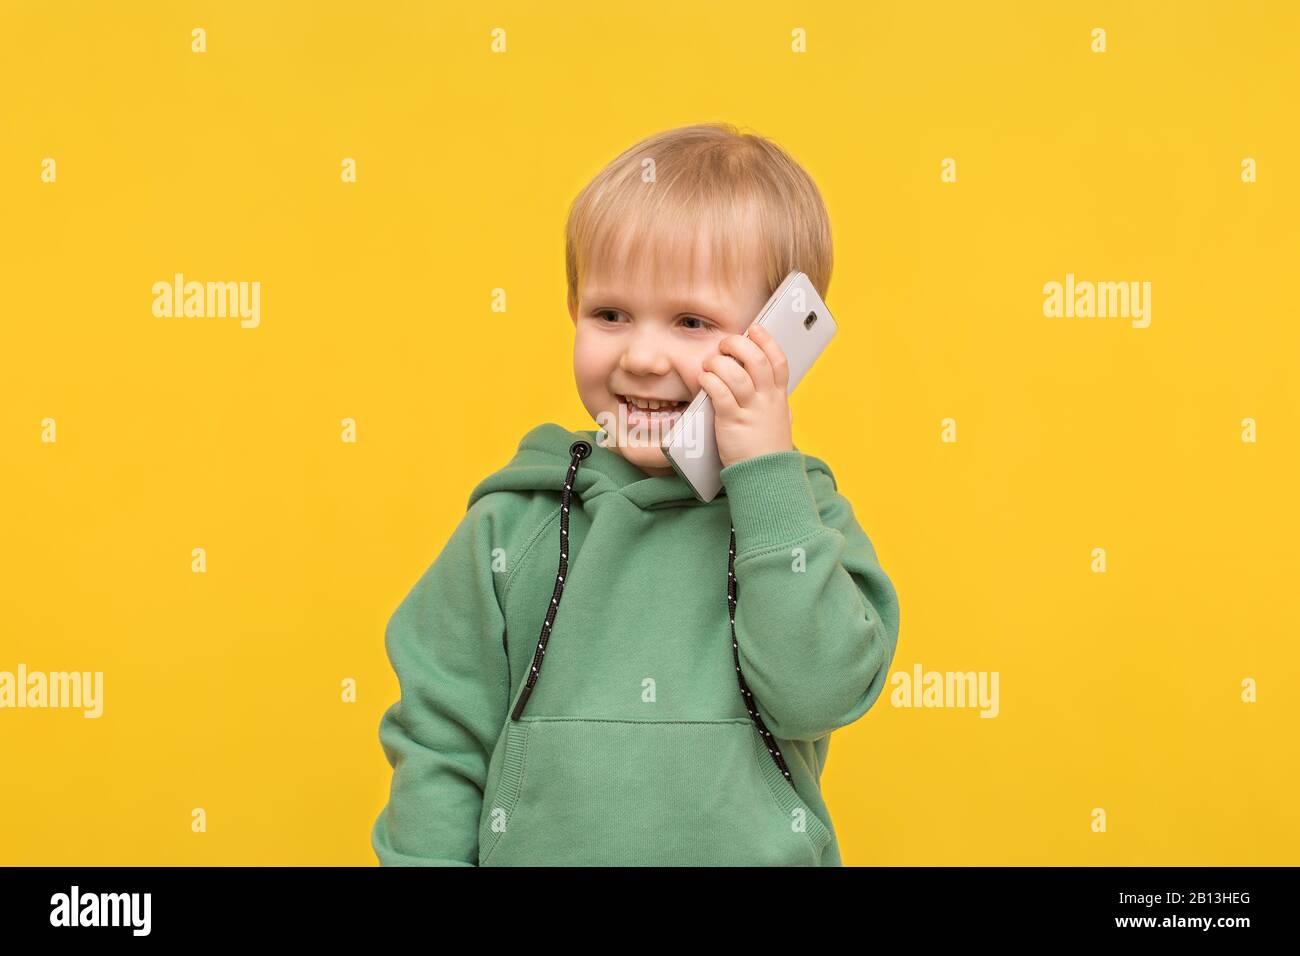 Kinderblonde spricht auf dem Telefon-Smartphone auf gelbem Federhintergrund. Konzept für Artikel über moderne Kindheit, Kinderkommunikation, Stockfoto